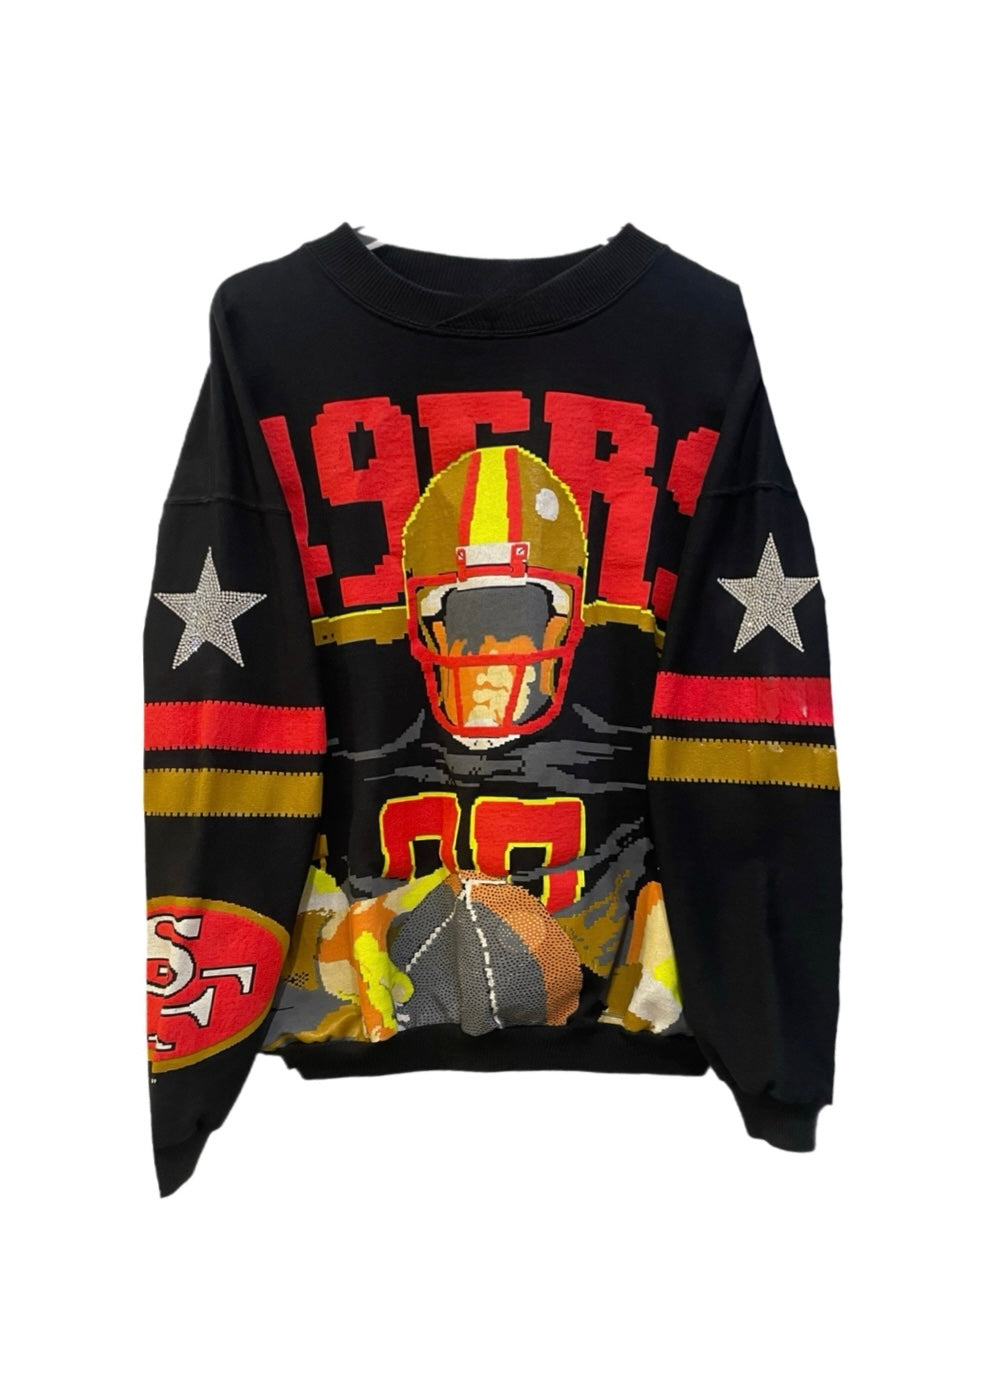 San Francisco 49ers, NFL One of a KIND Vintage “Super Rare Find”  Sweatshirt with Crystal Star Design